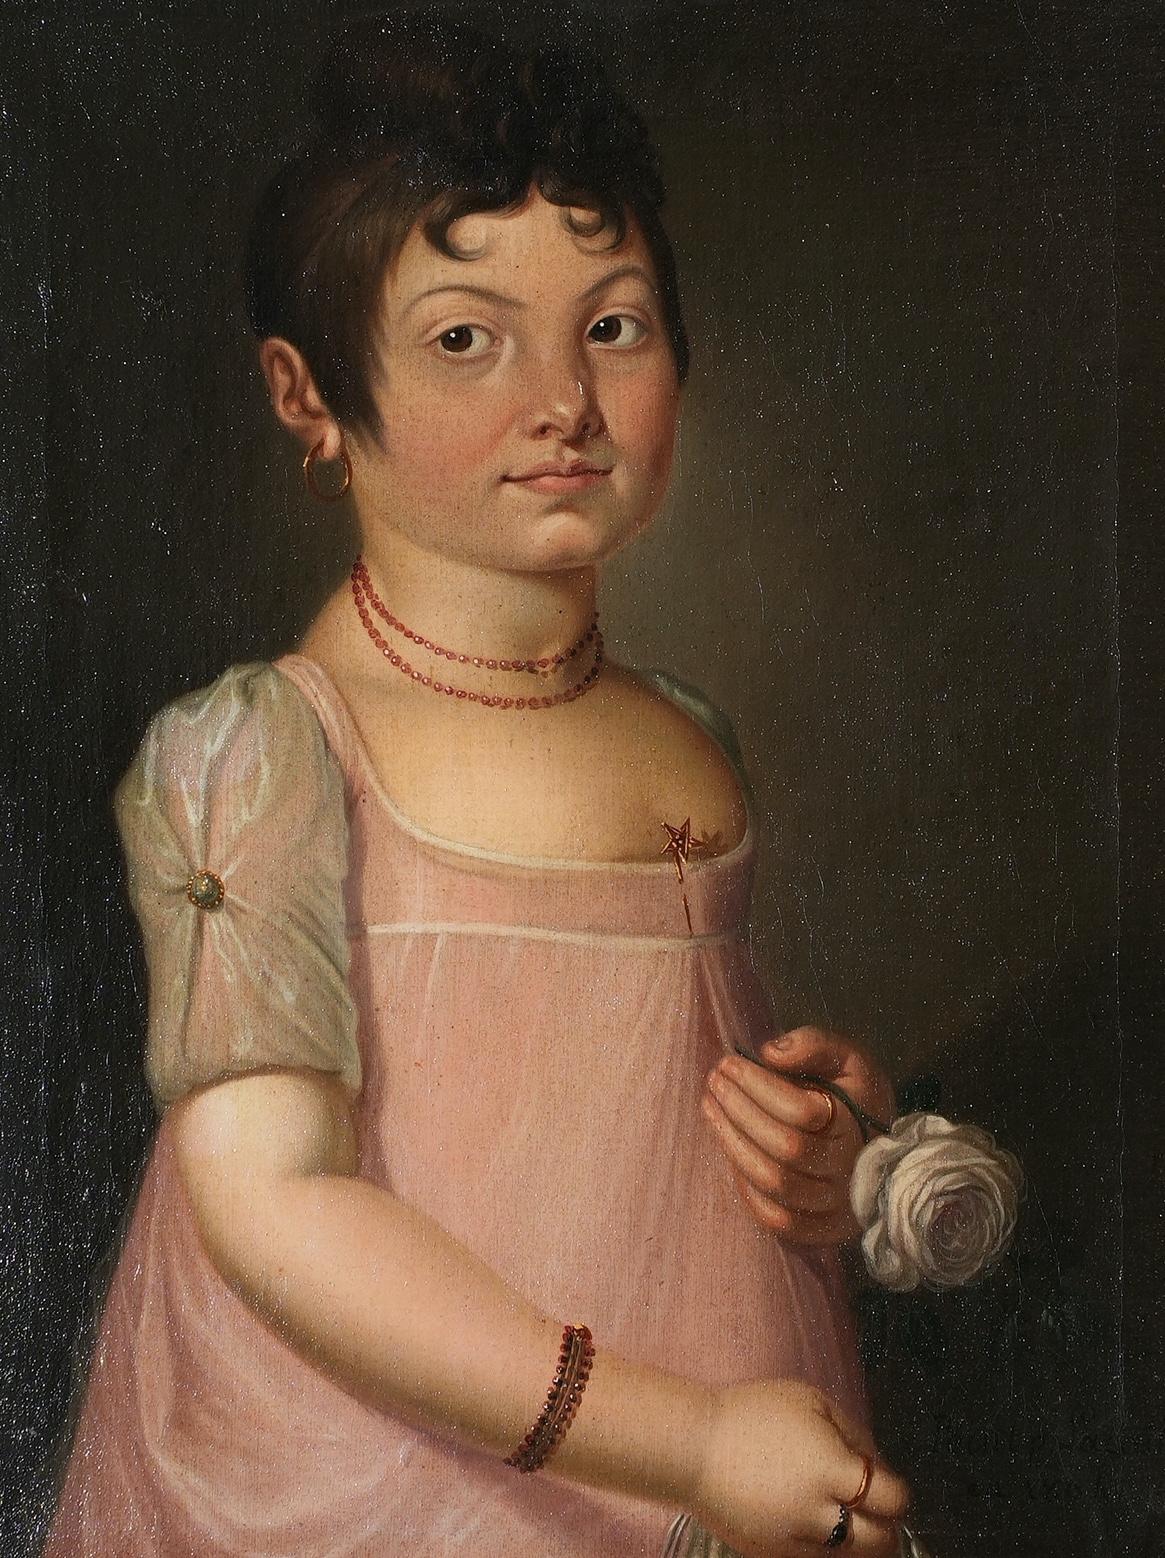 Le néoclassicisme imprègne ce portrait amusant d'une jeune fille française vers 1800 : la robe à taille haute, la coiffure antique 